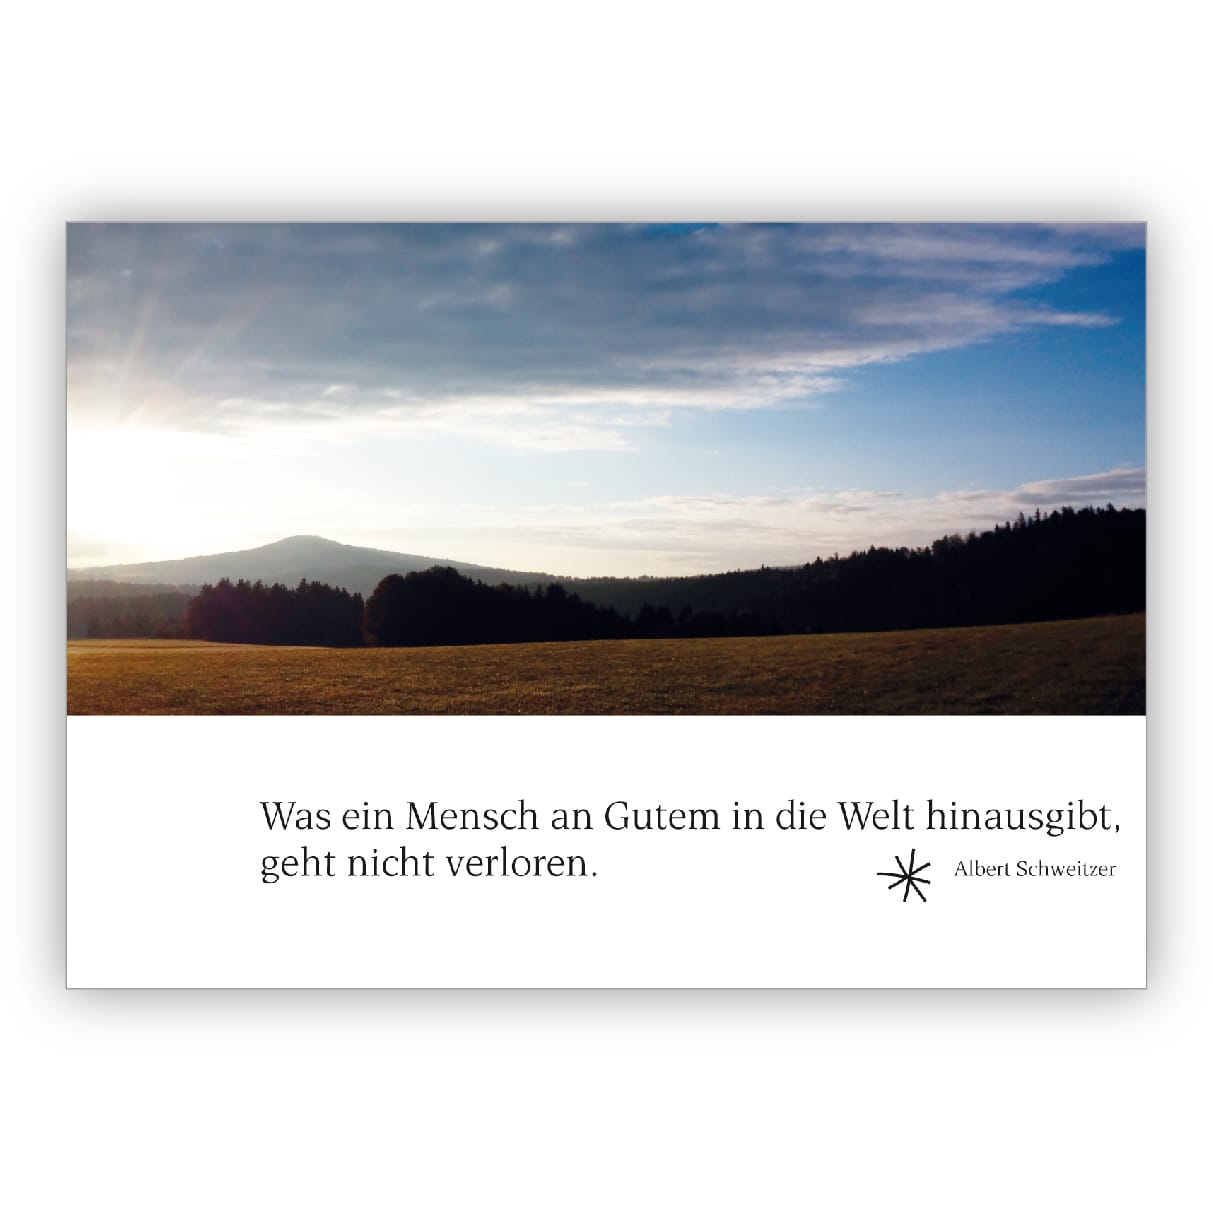 Moderne Trauerkarte/ Kondolenzkarte mit friedlicher Landschaft und Albert Schweizer Zitat